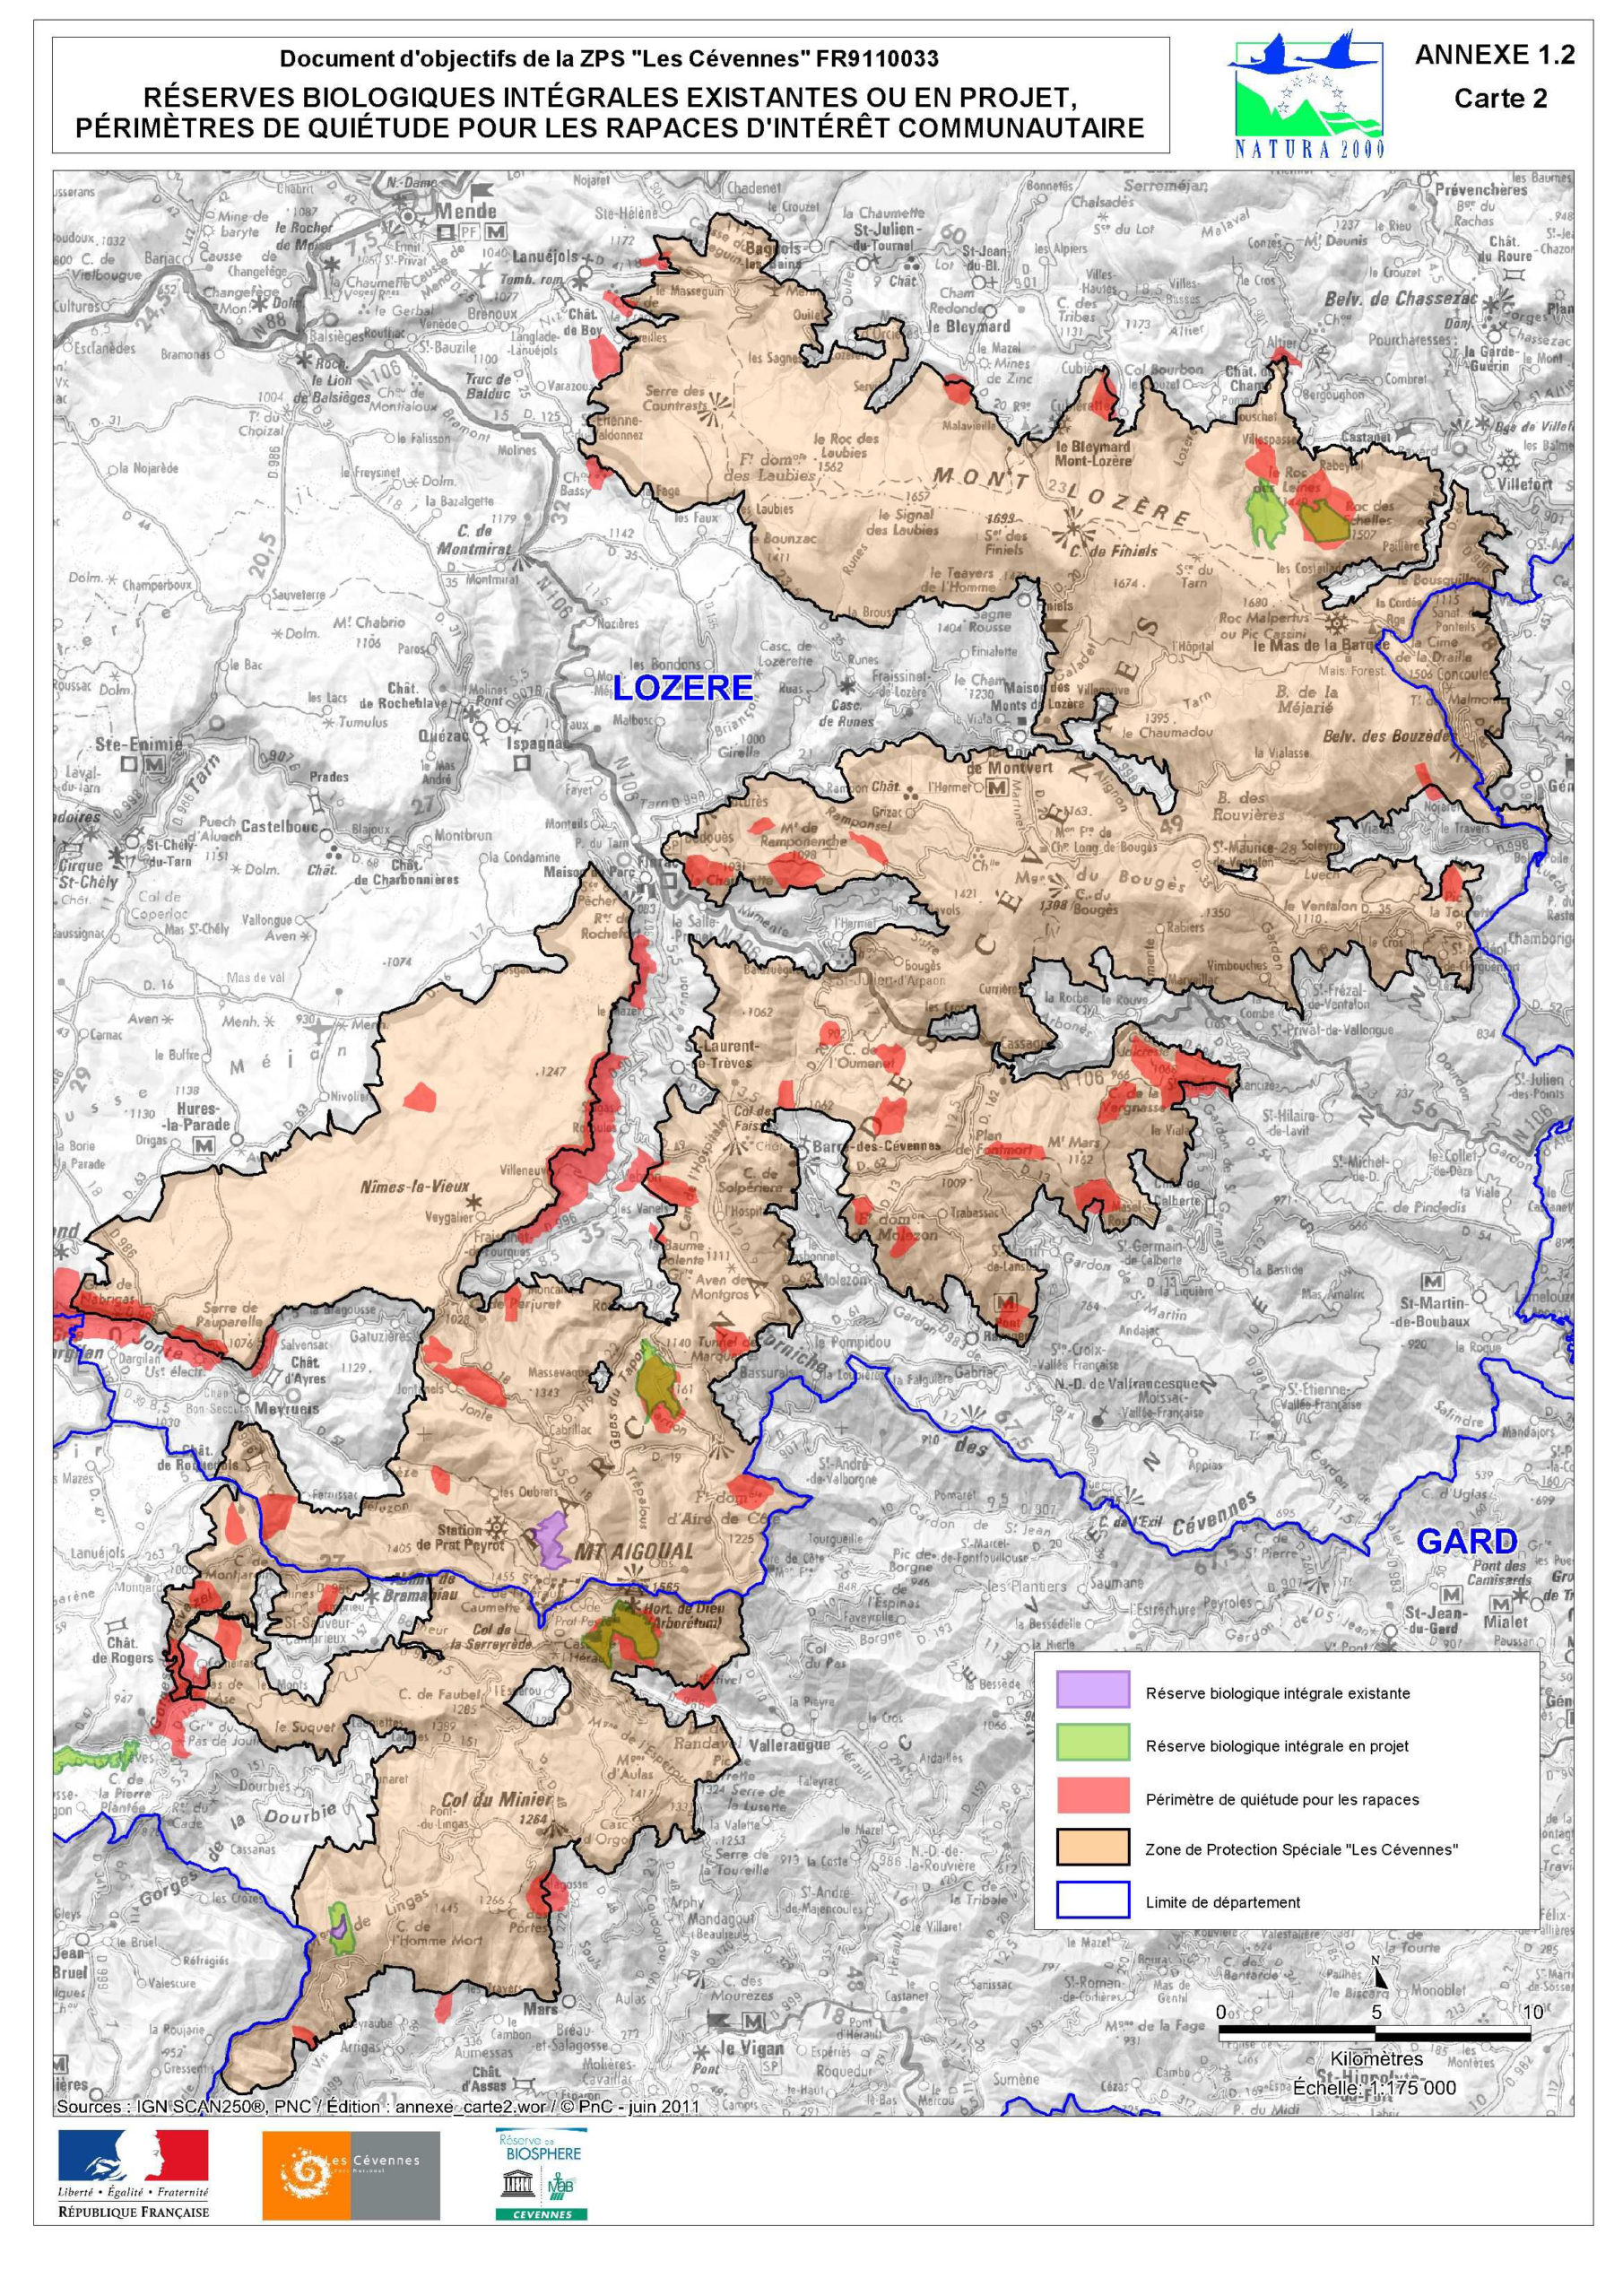 Carte des réserves biologiques integrales (RBI) existantes ou en projet au sein du Parc national des Cevennes